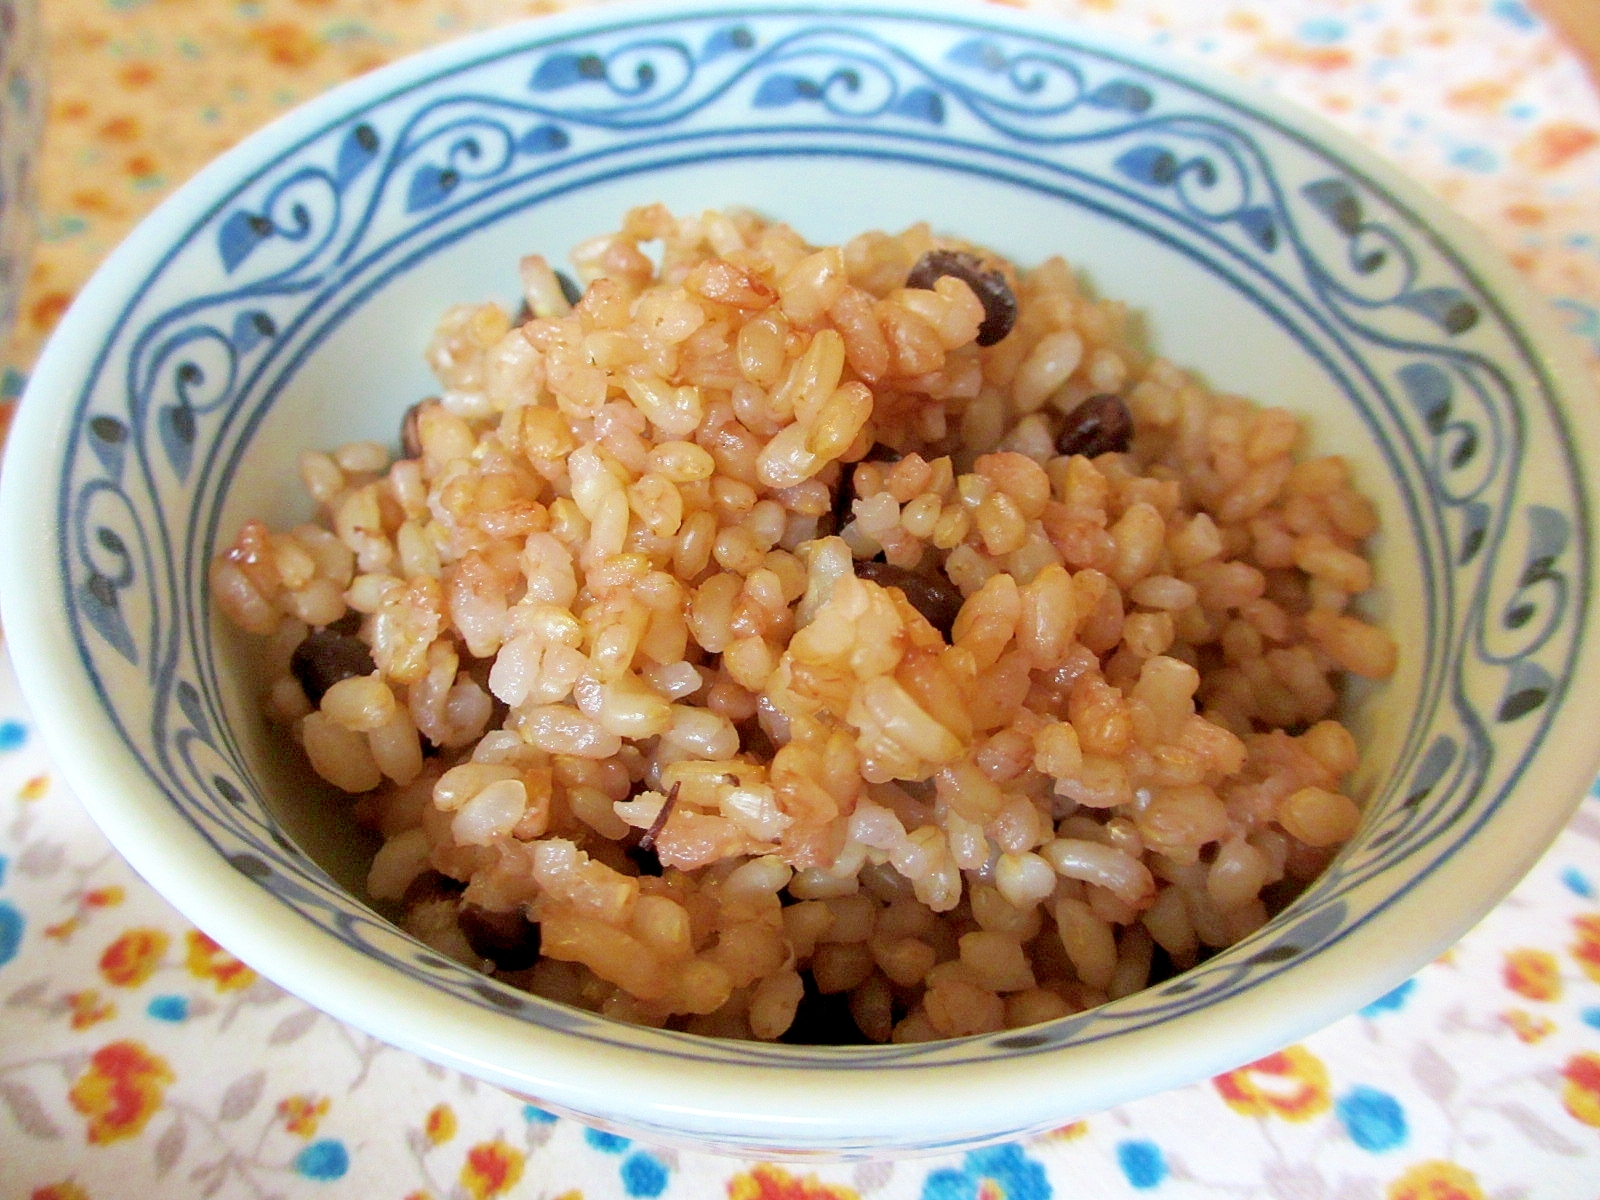 炊飯器小豆玄米